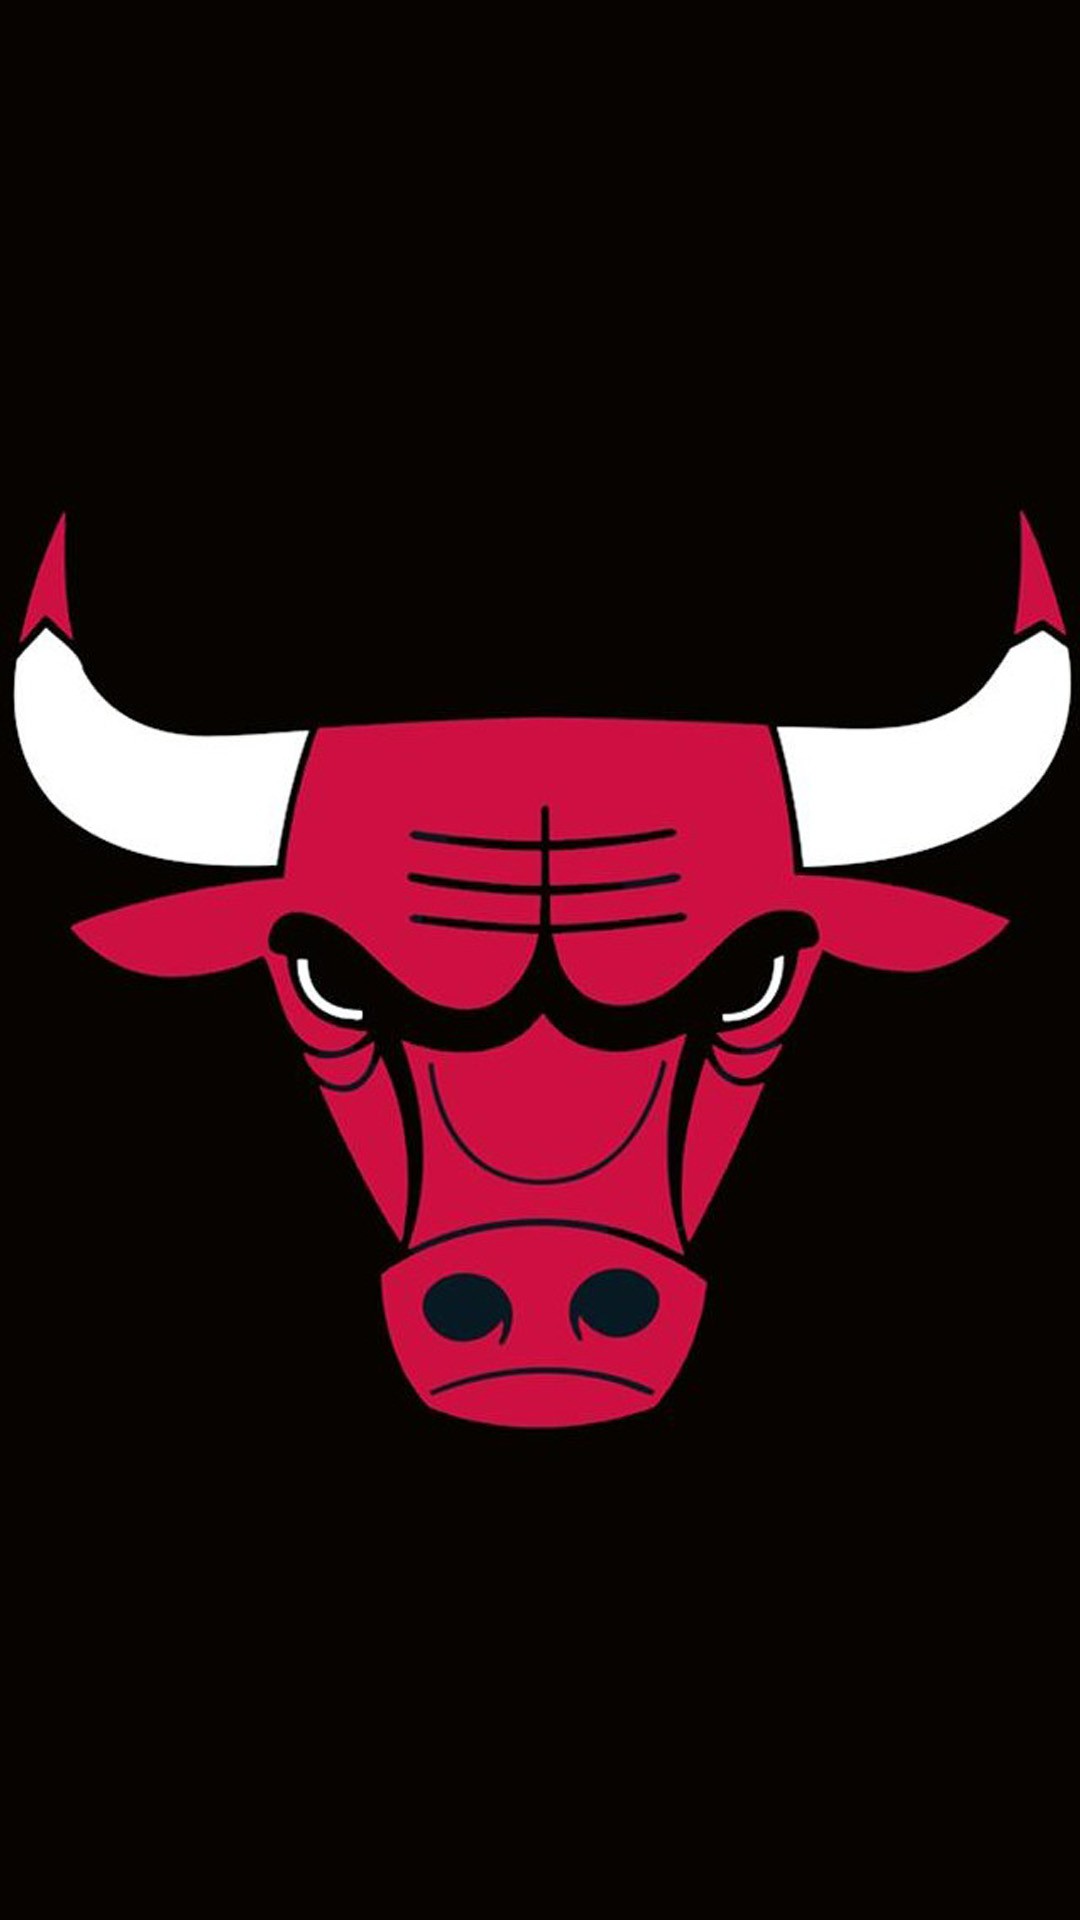 Chicago Bulls Iphone X Wallpaper 2021 Basketball Wallpaper